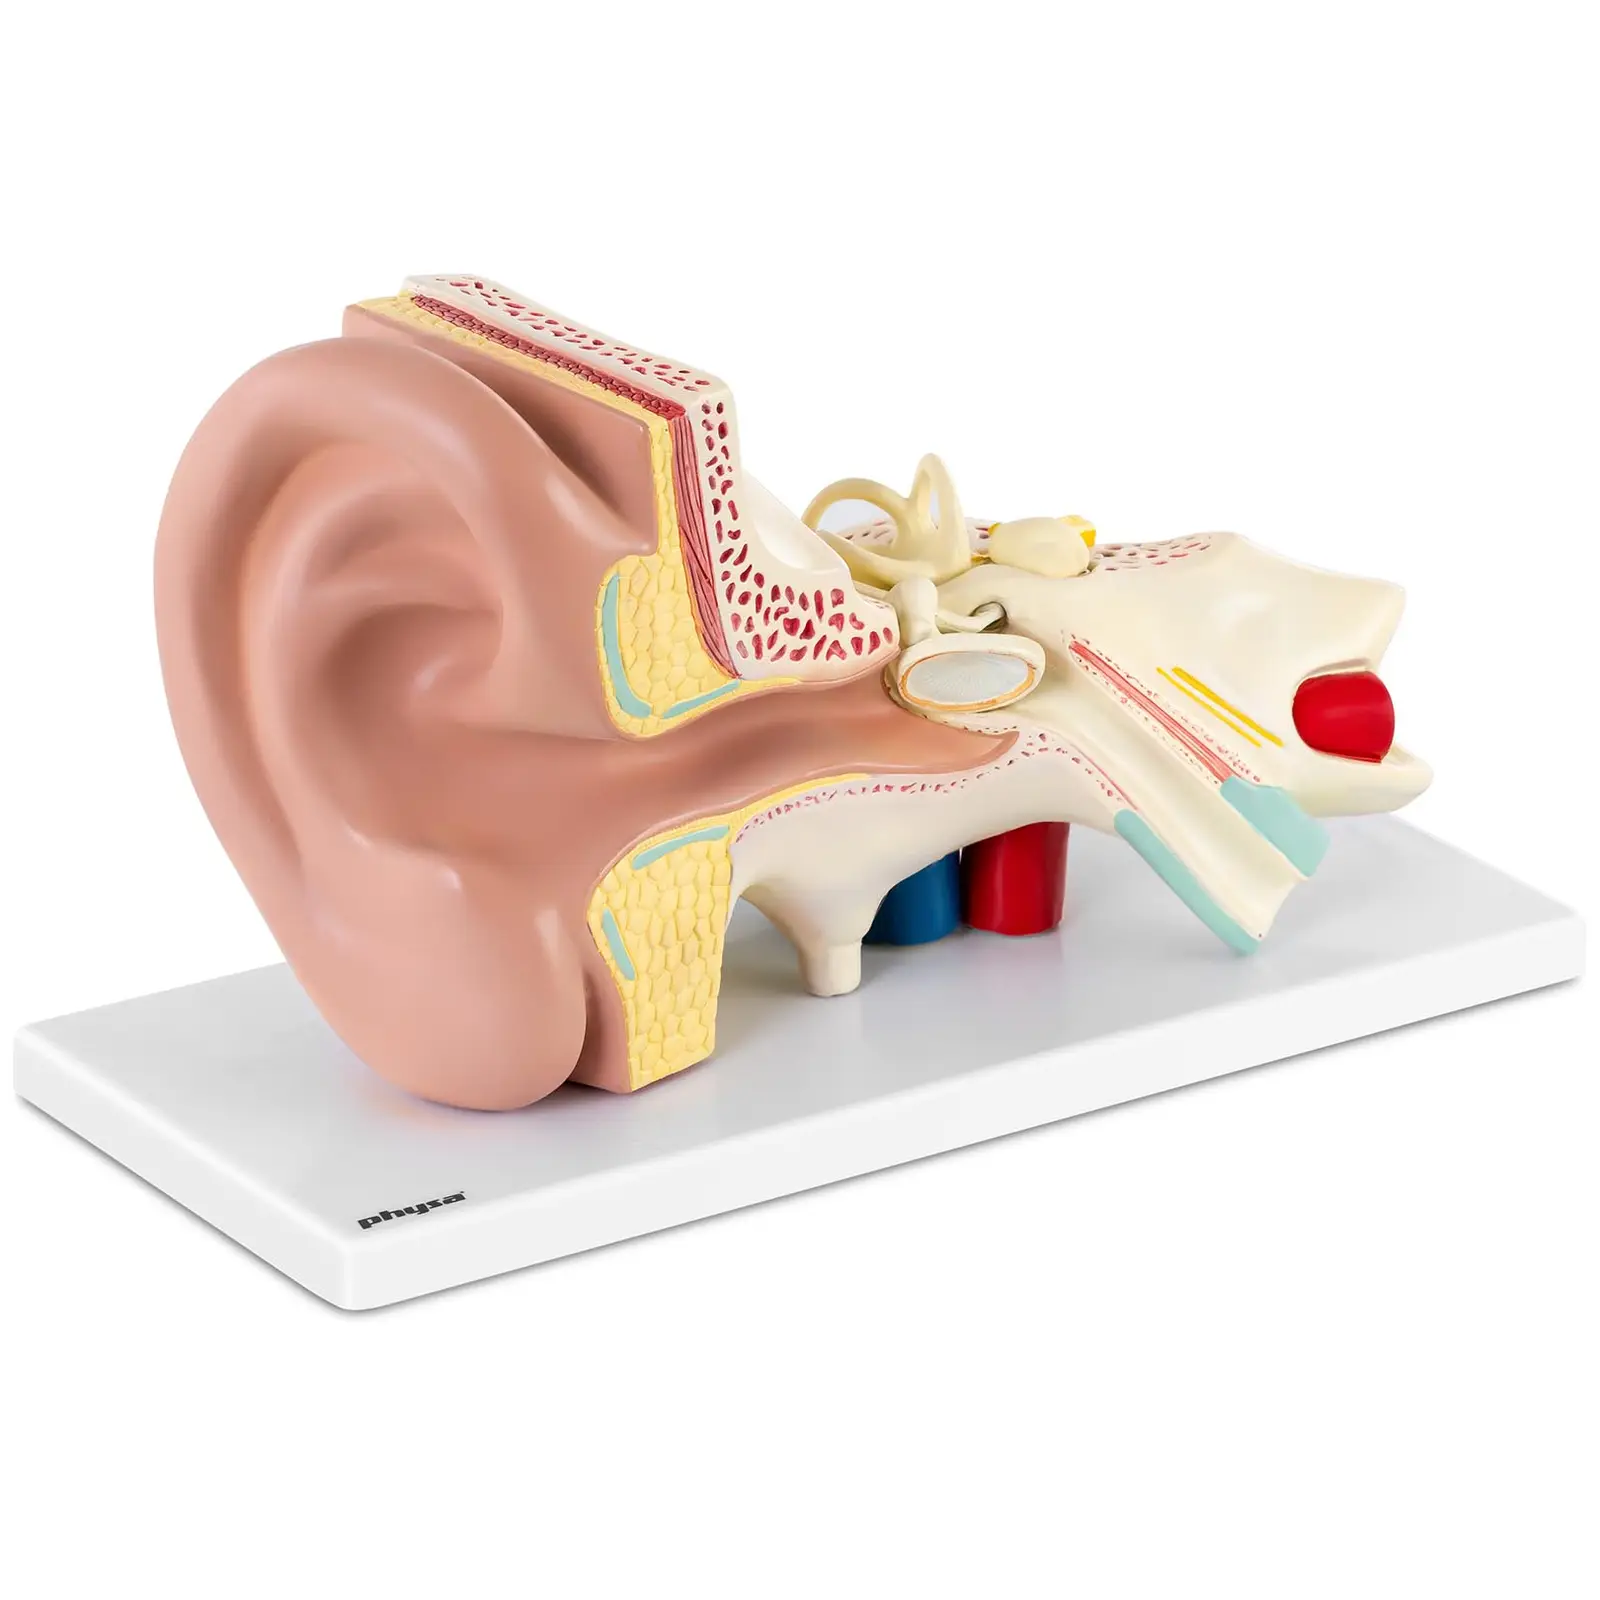 Maquette anatomique de l’oreille humaine - En 4 parties amovibles - 3 fois la taille réelle